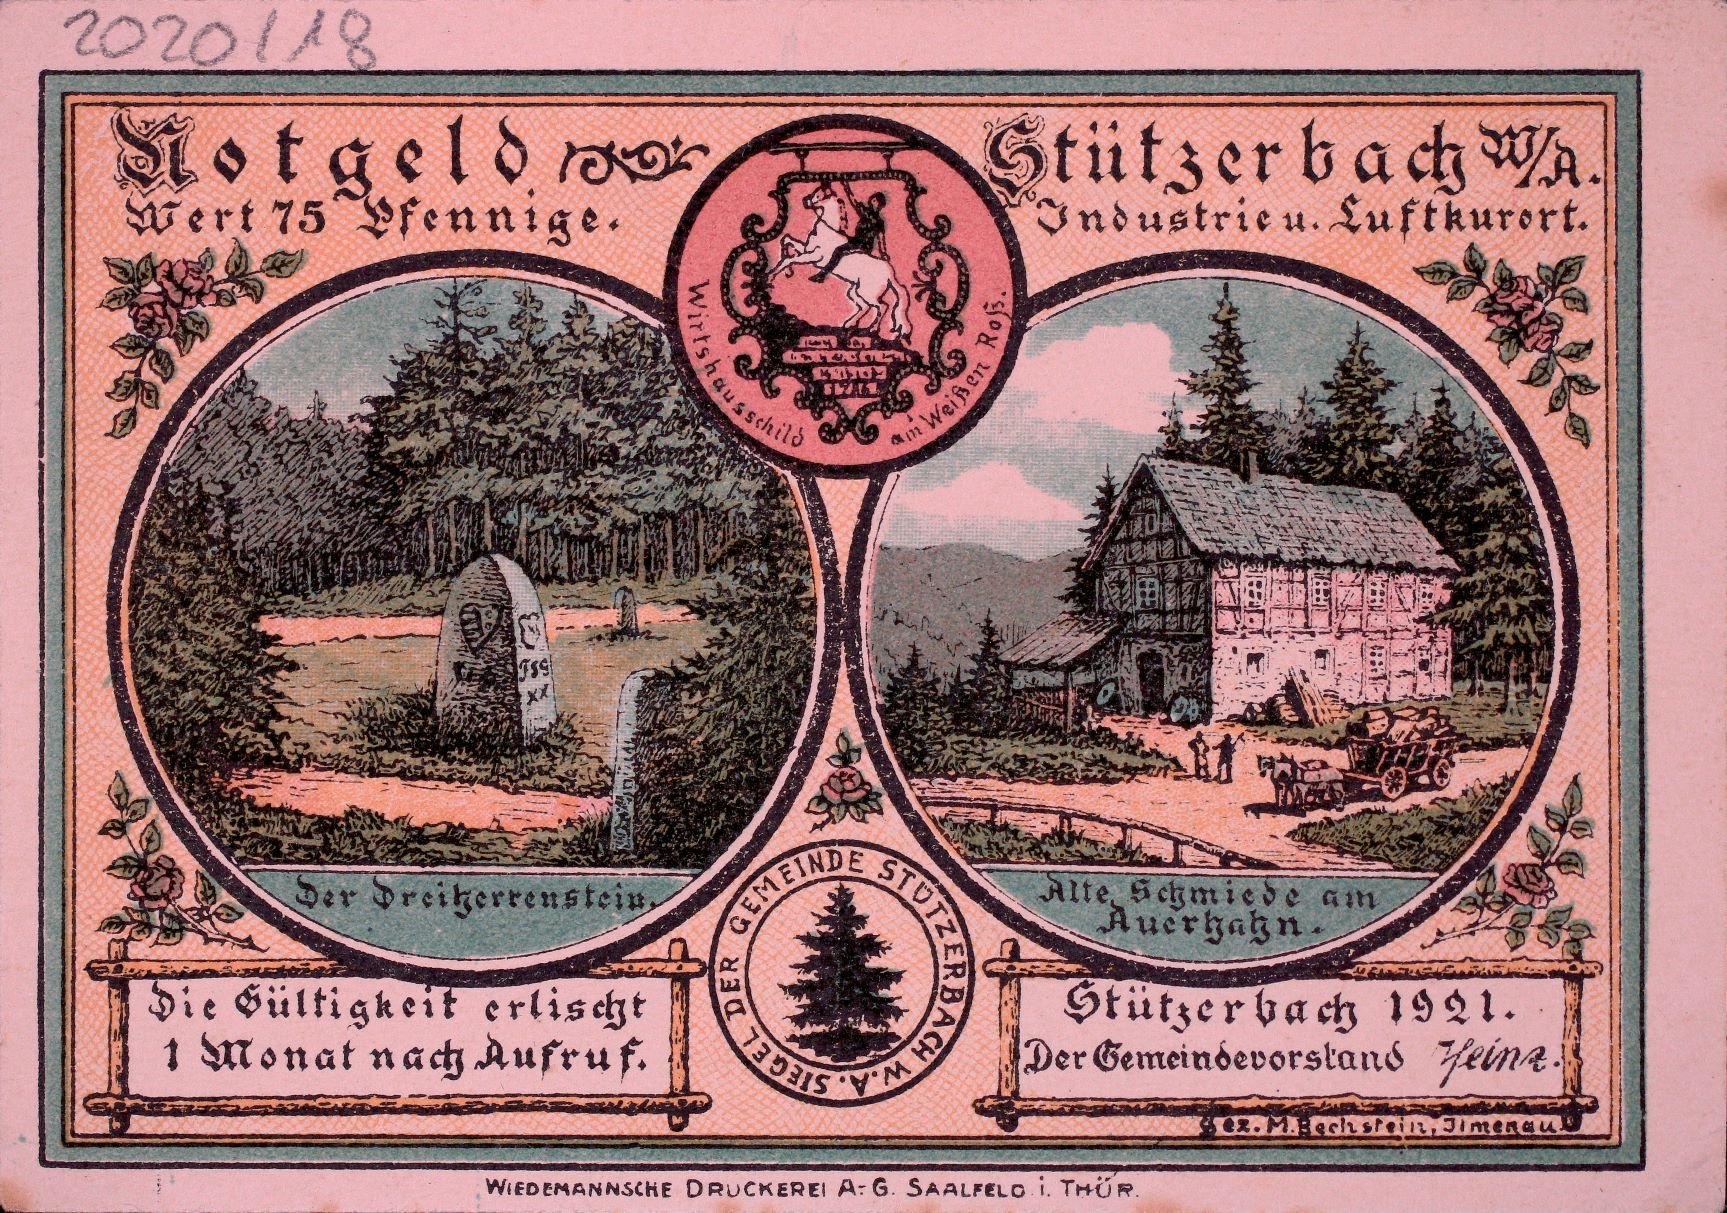 Notgeld der Stadt Stützerbach 1921 75 Pfennig VS (Rheinisches Schützenmuseum Neuss CC BY-NC-SA)